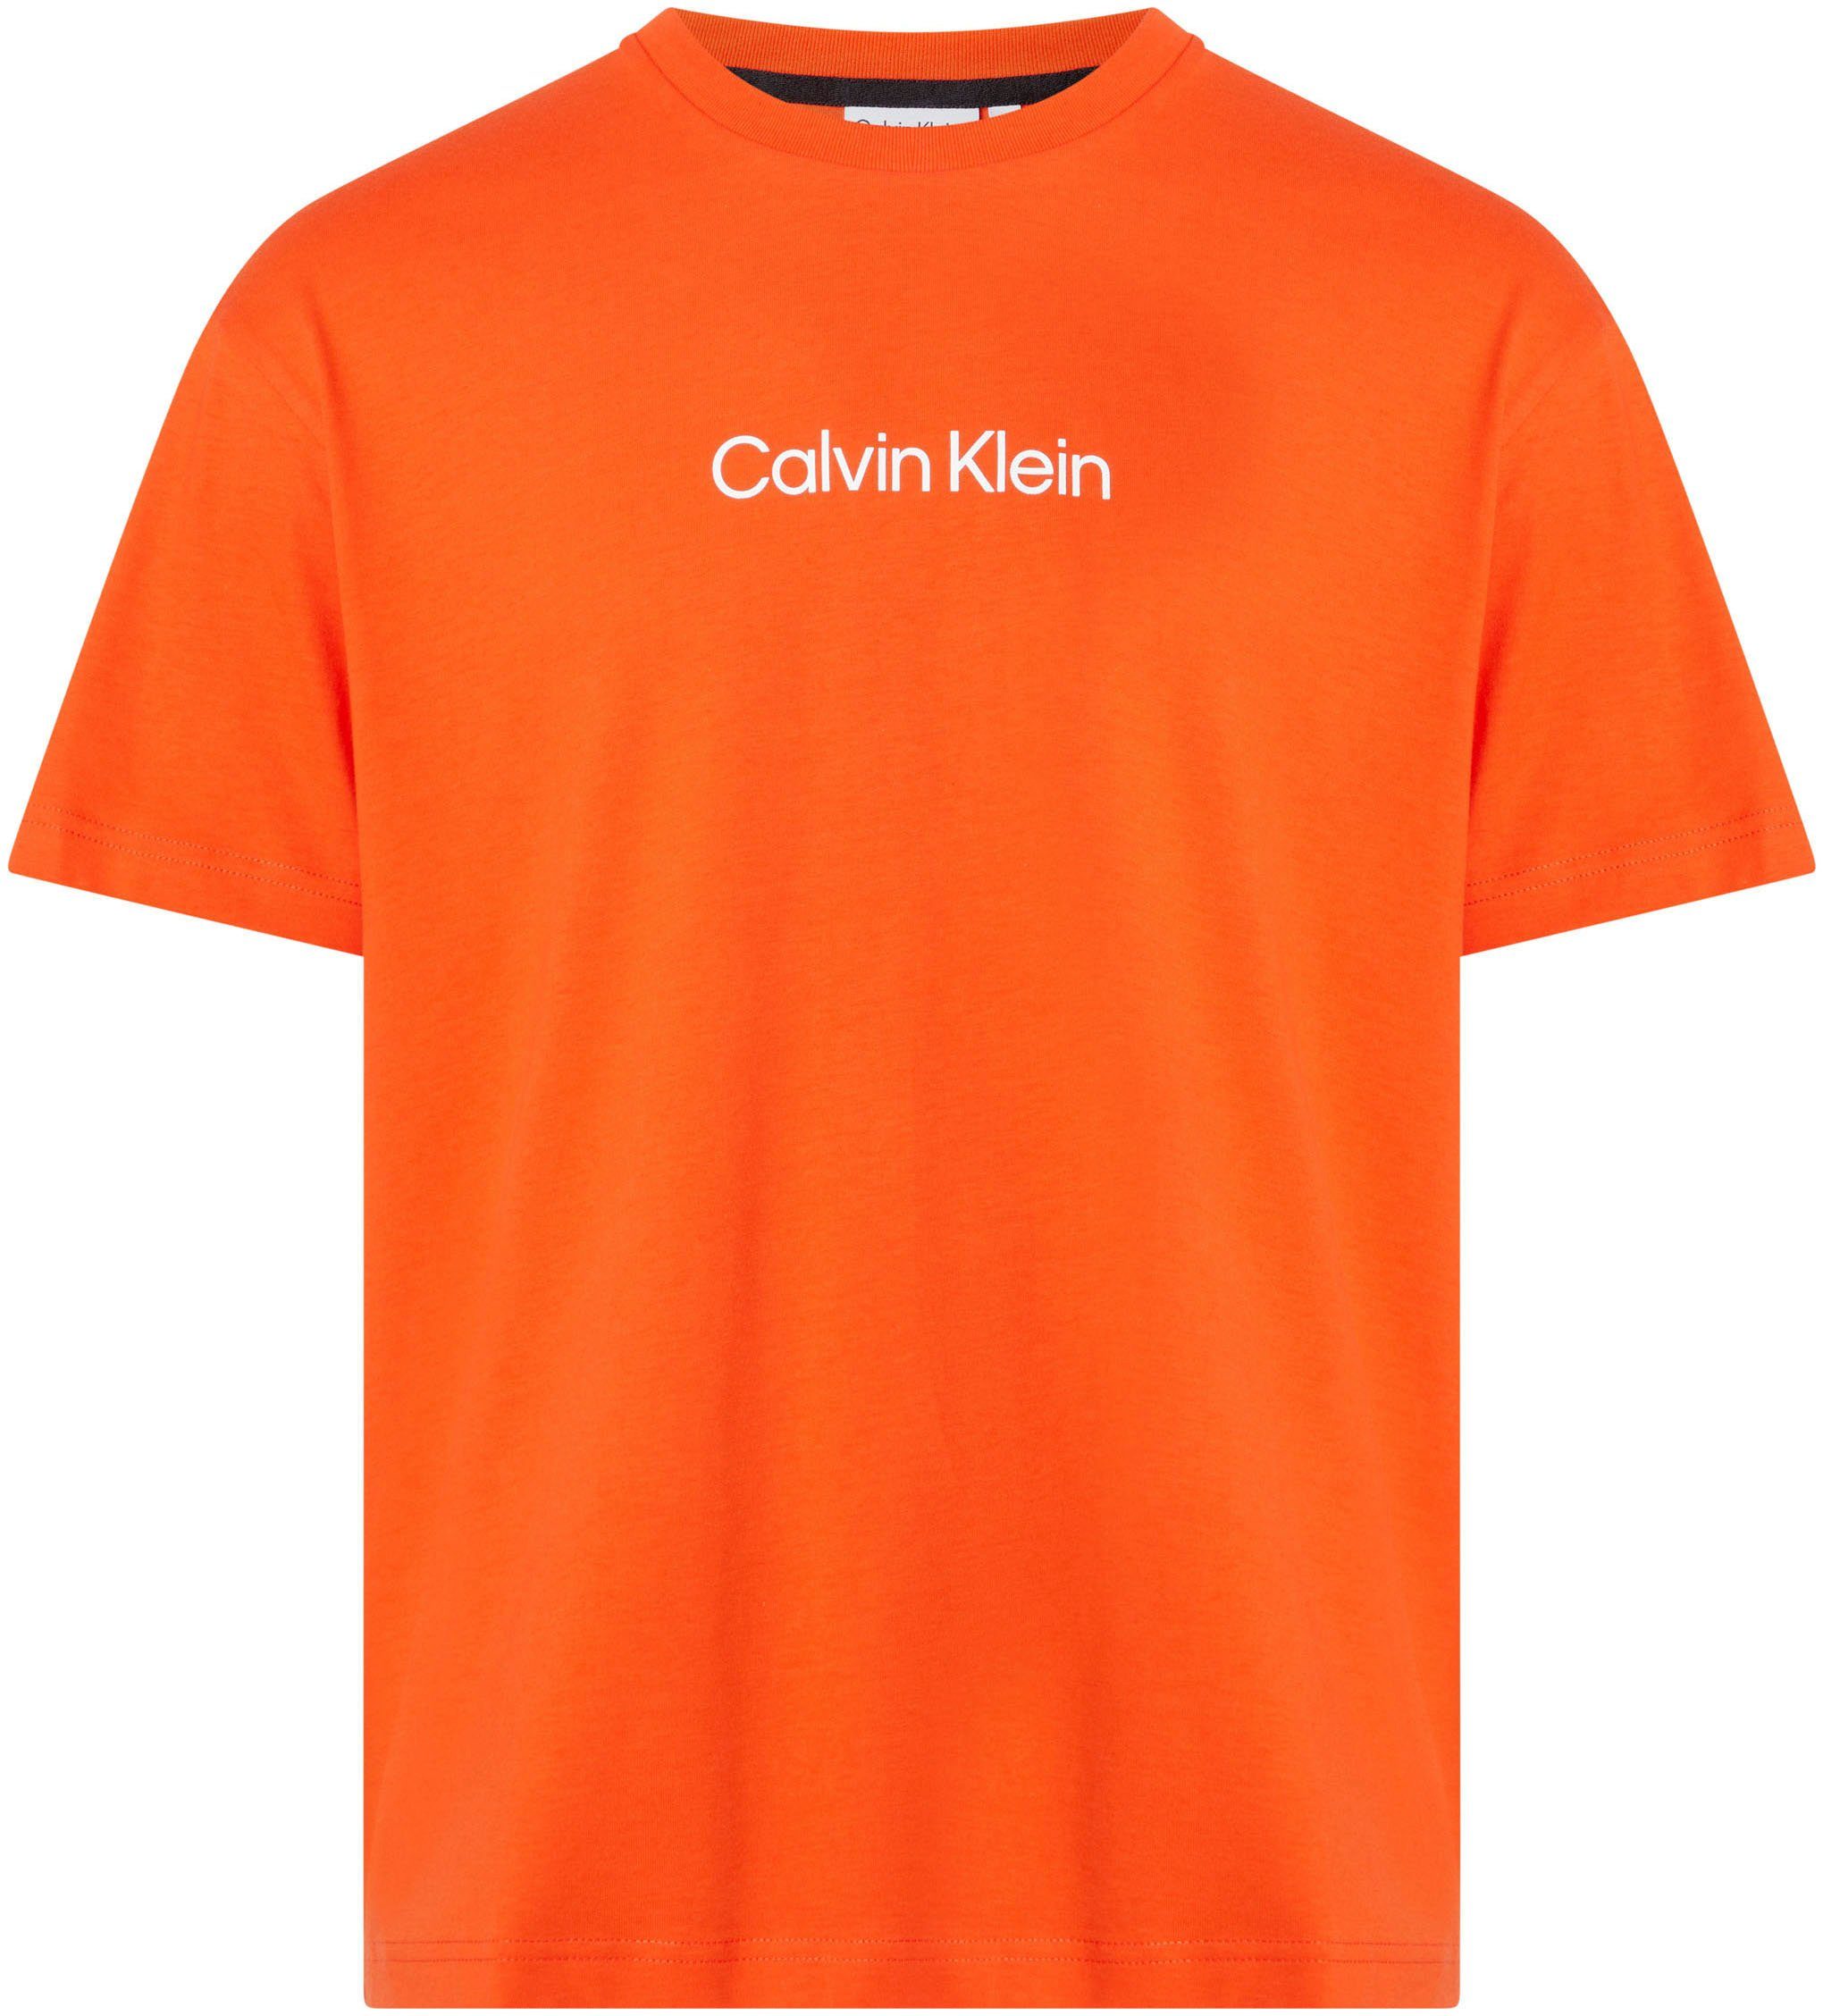 Calvin Klein COMFORT Markenlabel aufgedrucktem Spicy HERO Orange T-Shirt LOGO T-SHIRT mit